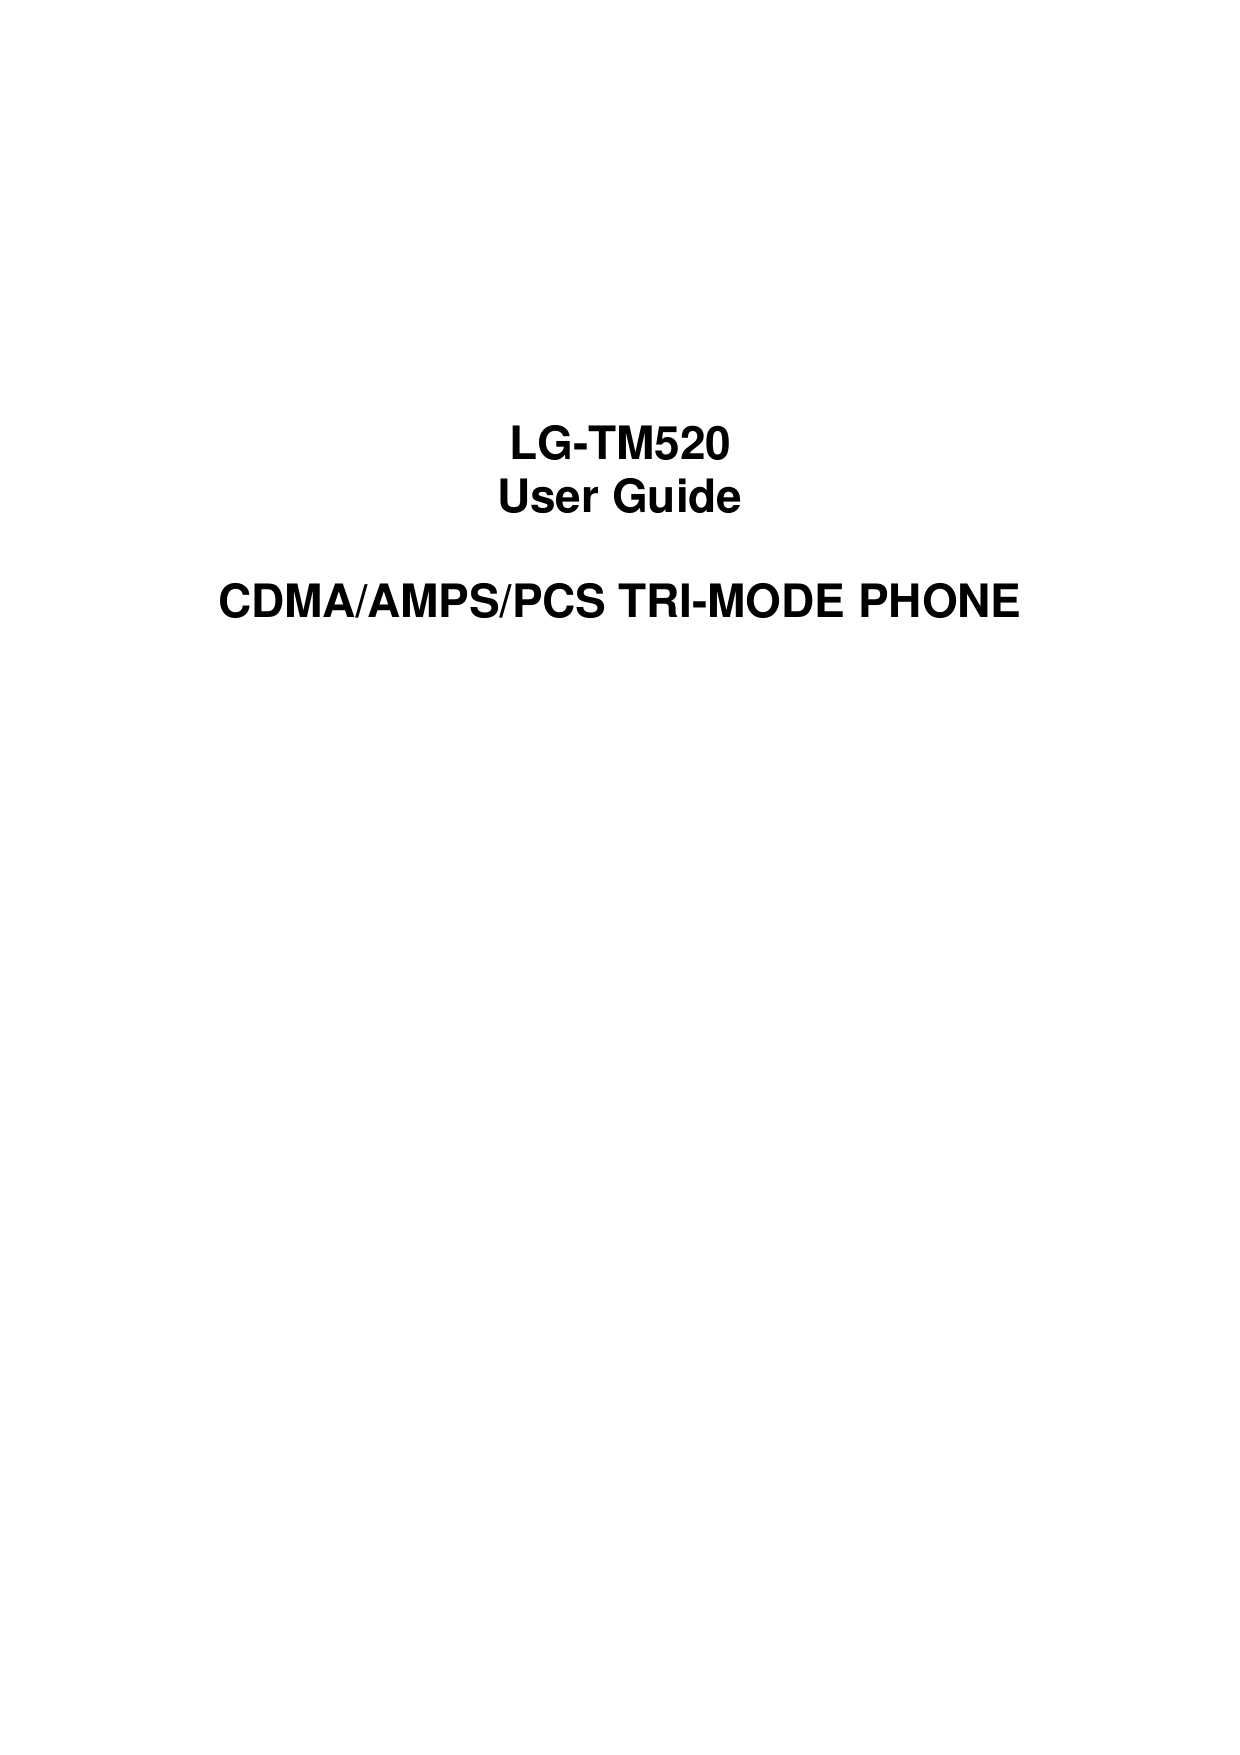     LG-TM520 User Guide  CDMA/AMPS/PCS TRI-MODE PHONE                         